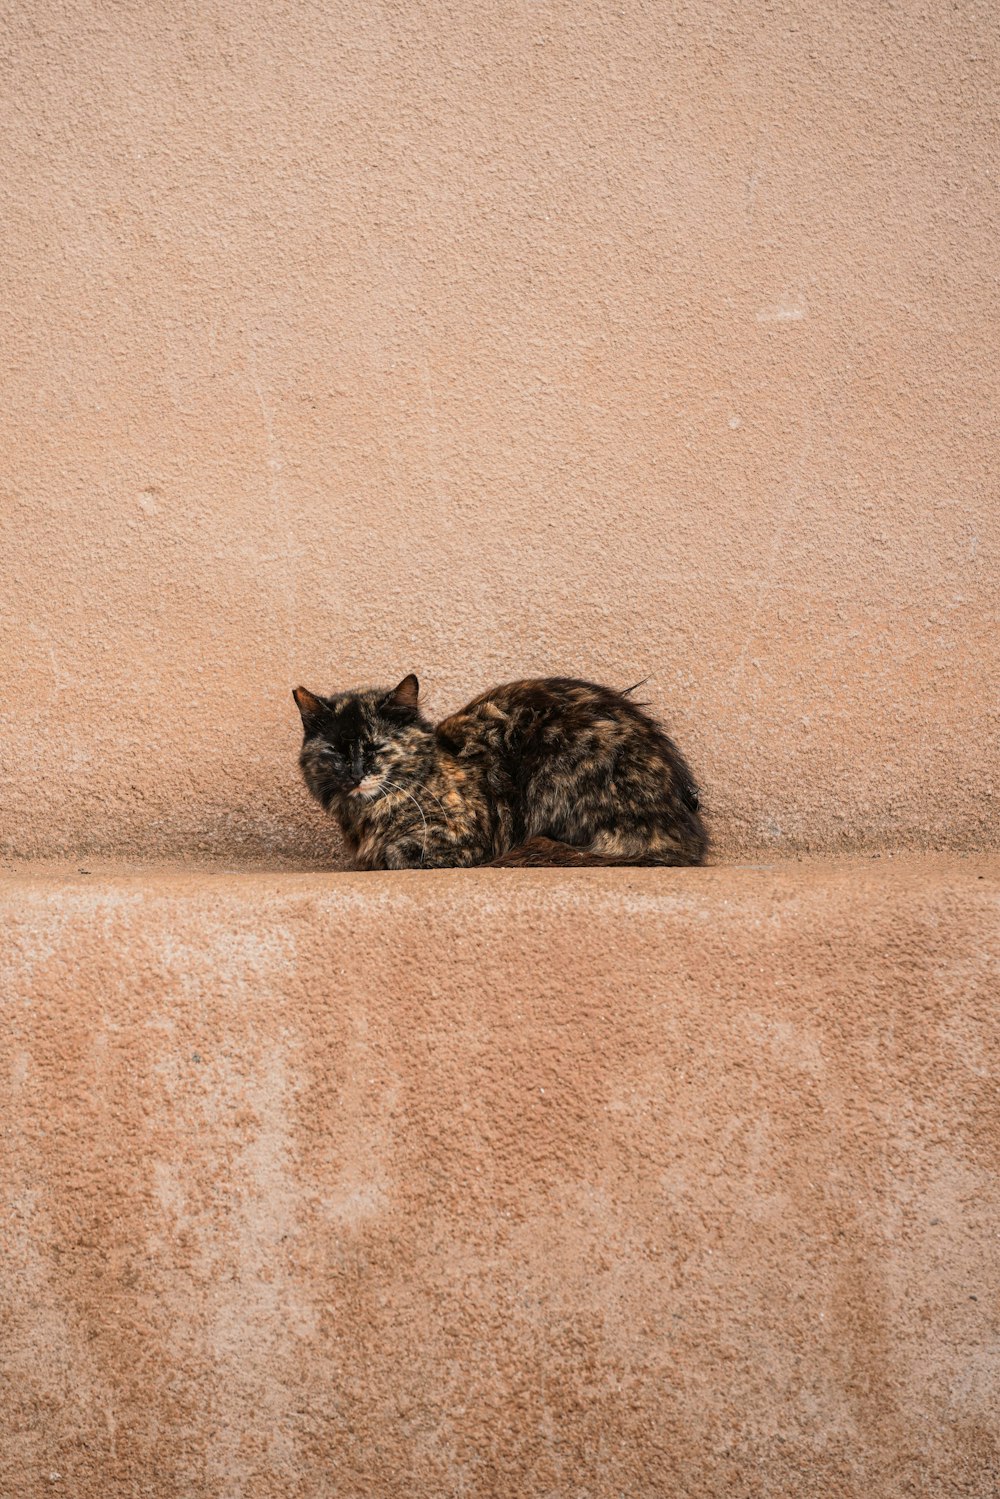 壁際の地面に横たわる猫